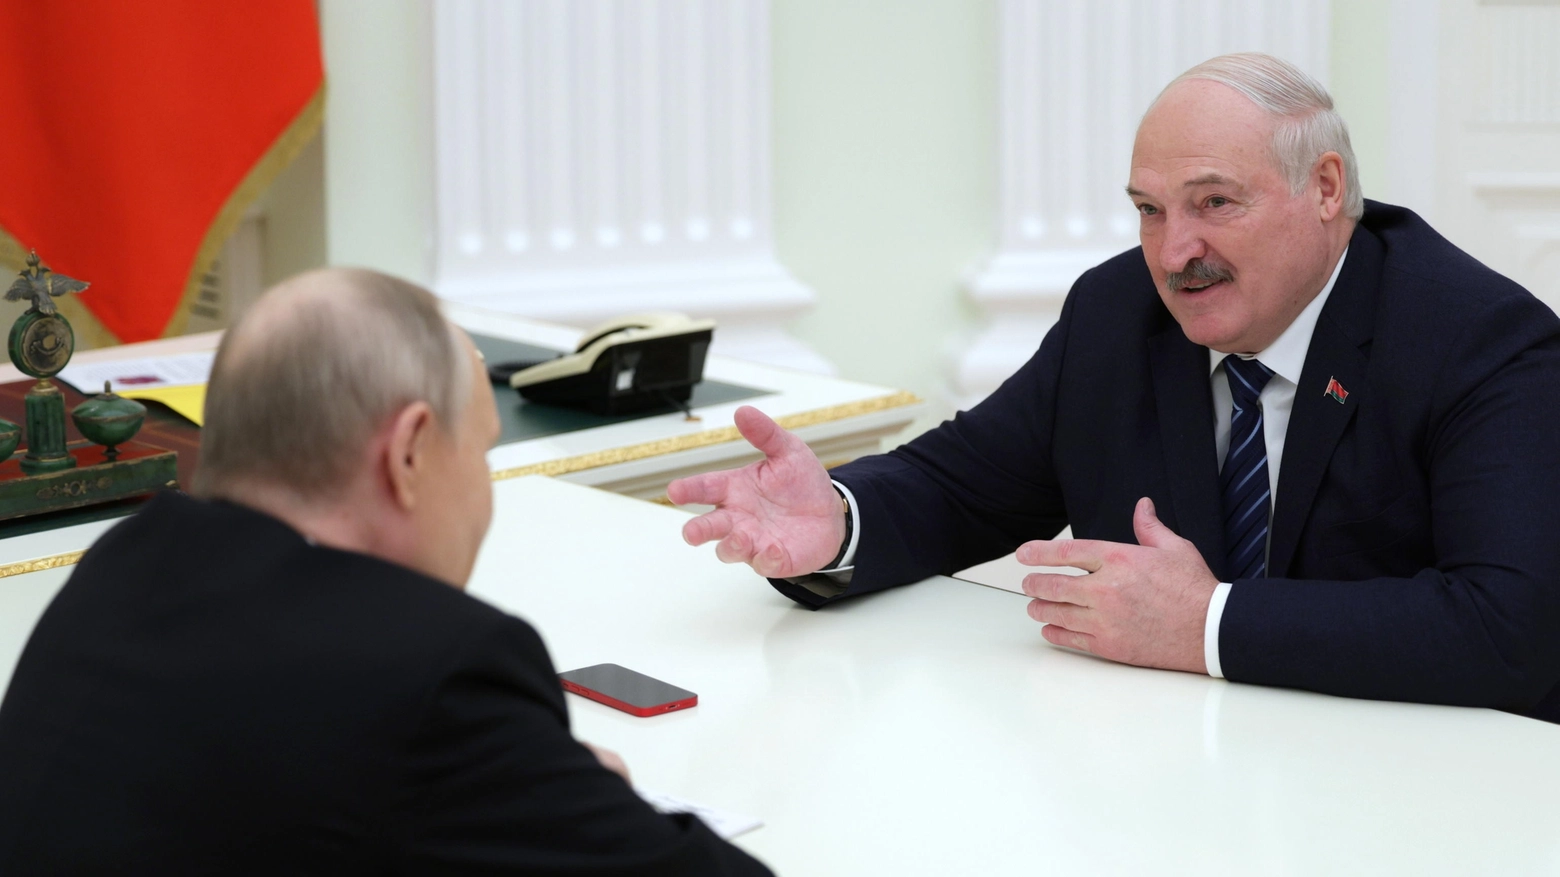 Avvertimento di Lukashenko: “Alta probabilità di provocazioni armate da parte di Kiev”. Minsk sposta battaglioni nella regione di Vitebsk